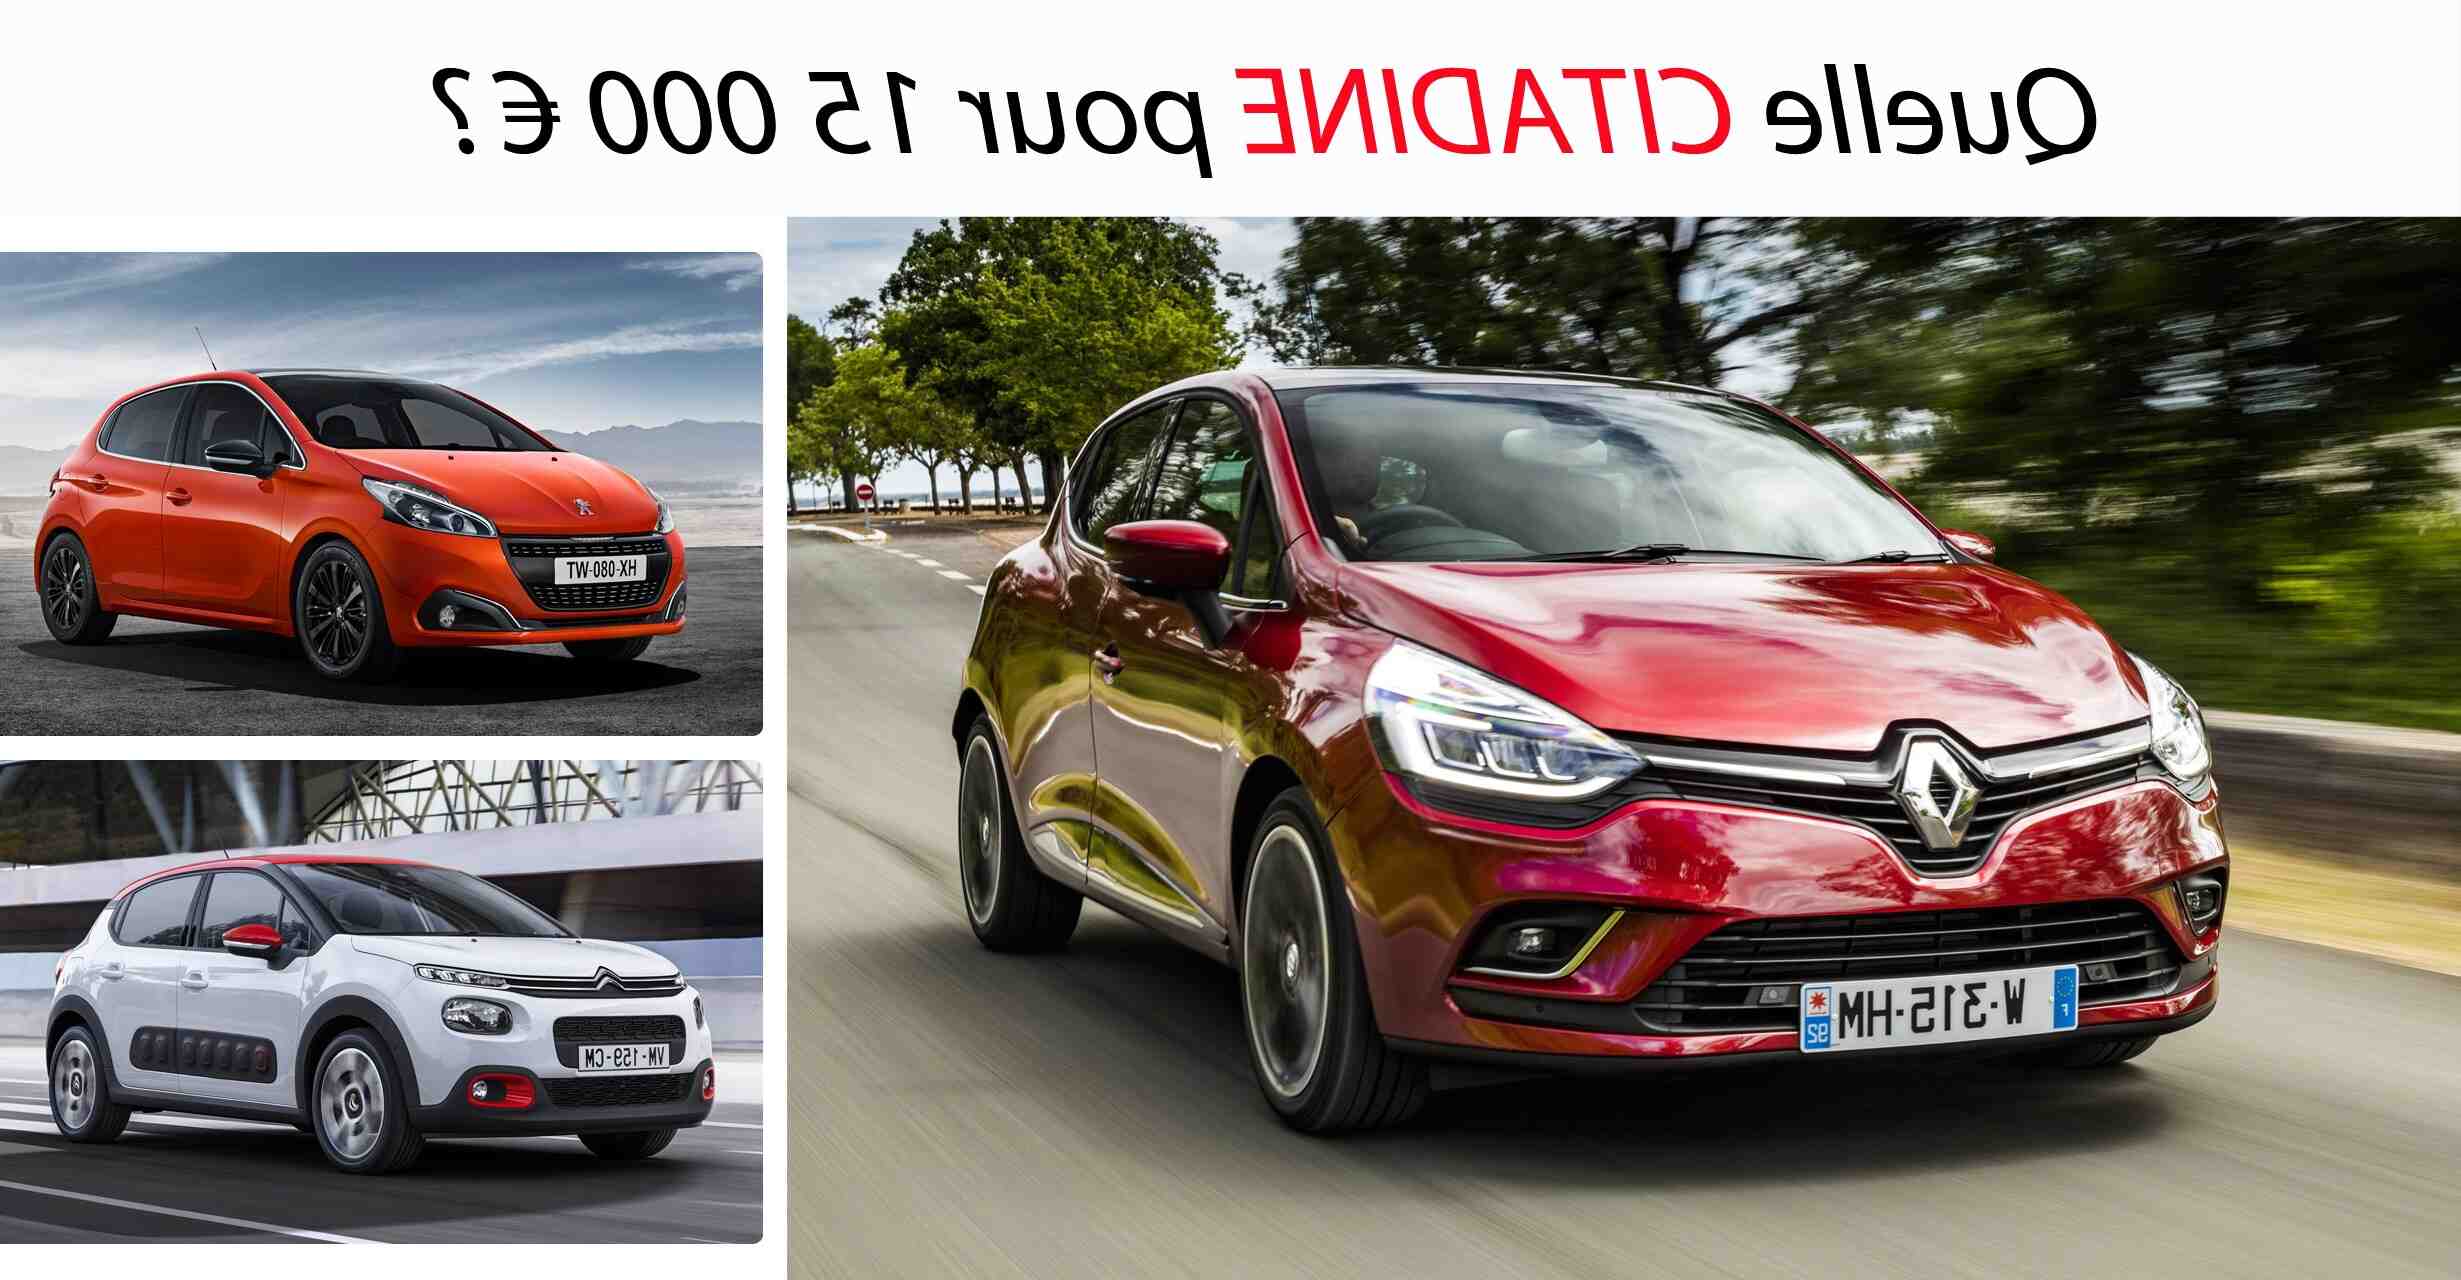 Quelle voiture acheter en 2020 pour 15000 euros ?